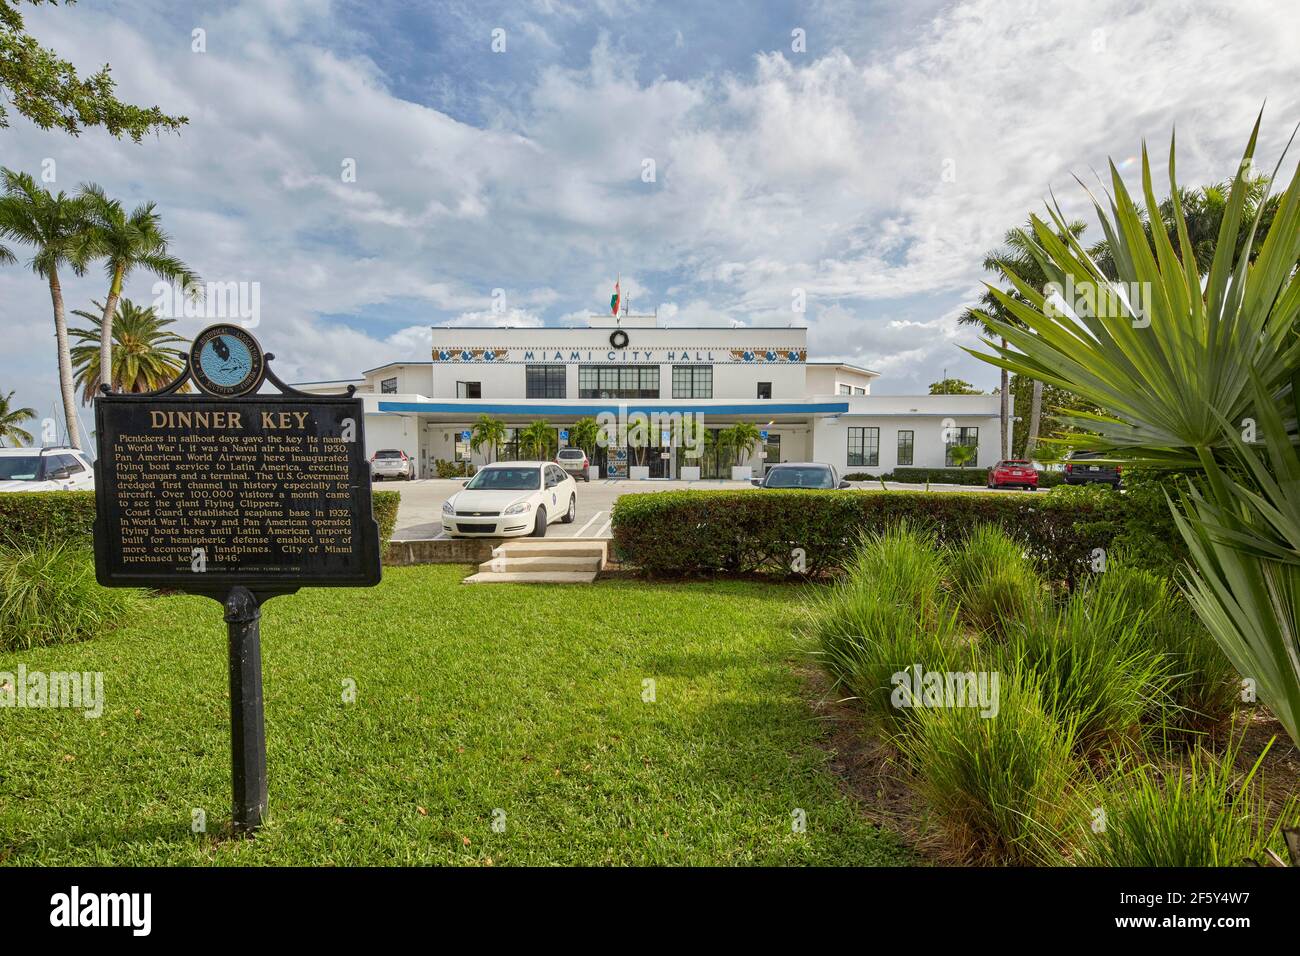 Hôtel de ville de Miami (ancien bâtiment du terminal panaméricaine) Floride États-Unis Banque D'Images